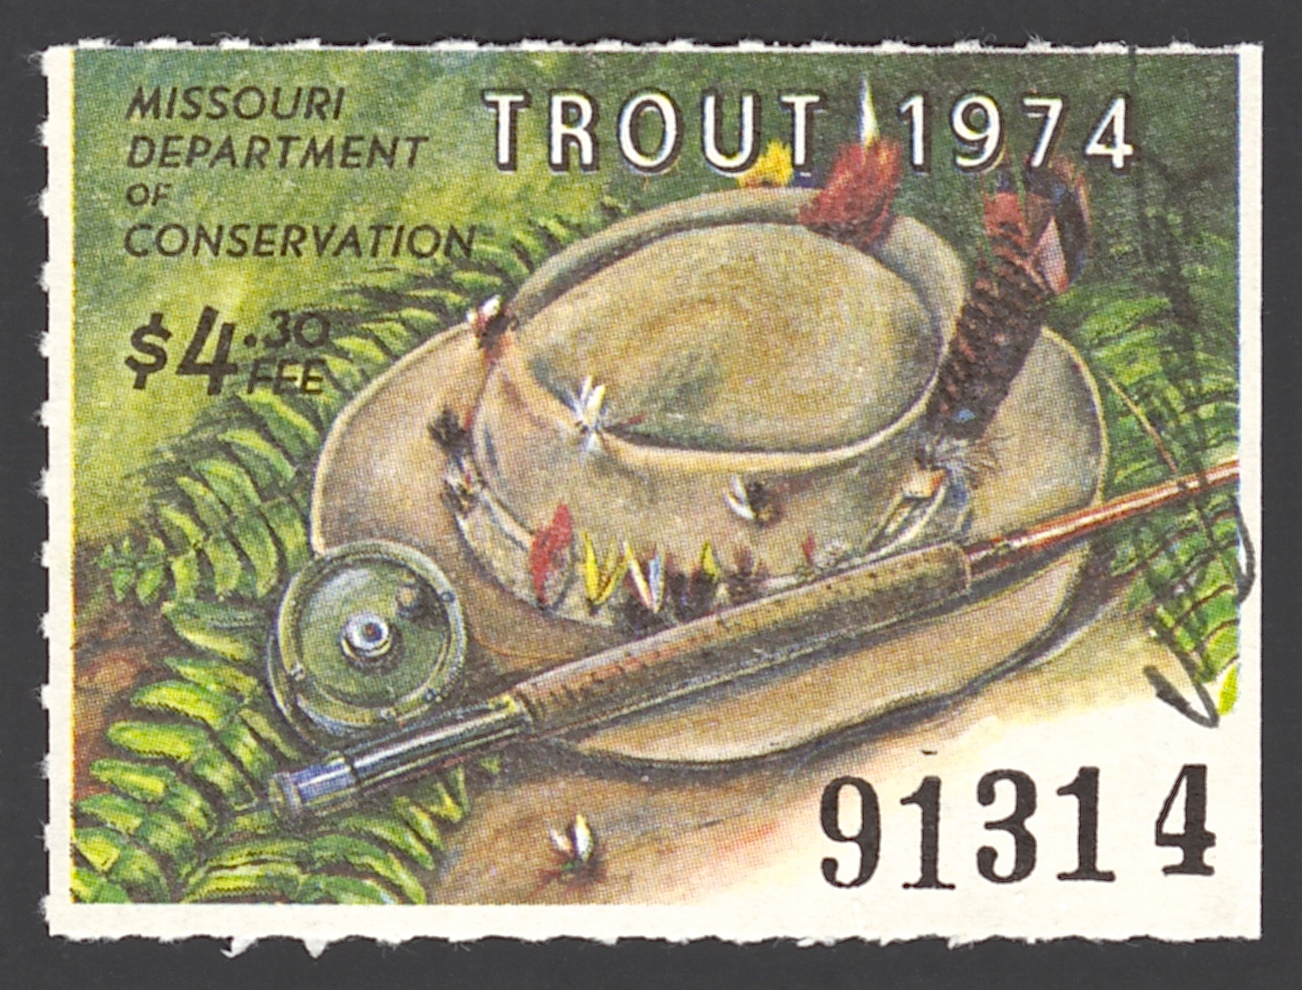 1974 Missouri Missouri Trout Stamp signed by Charles Schwartz